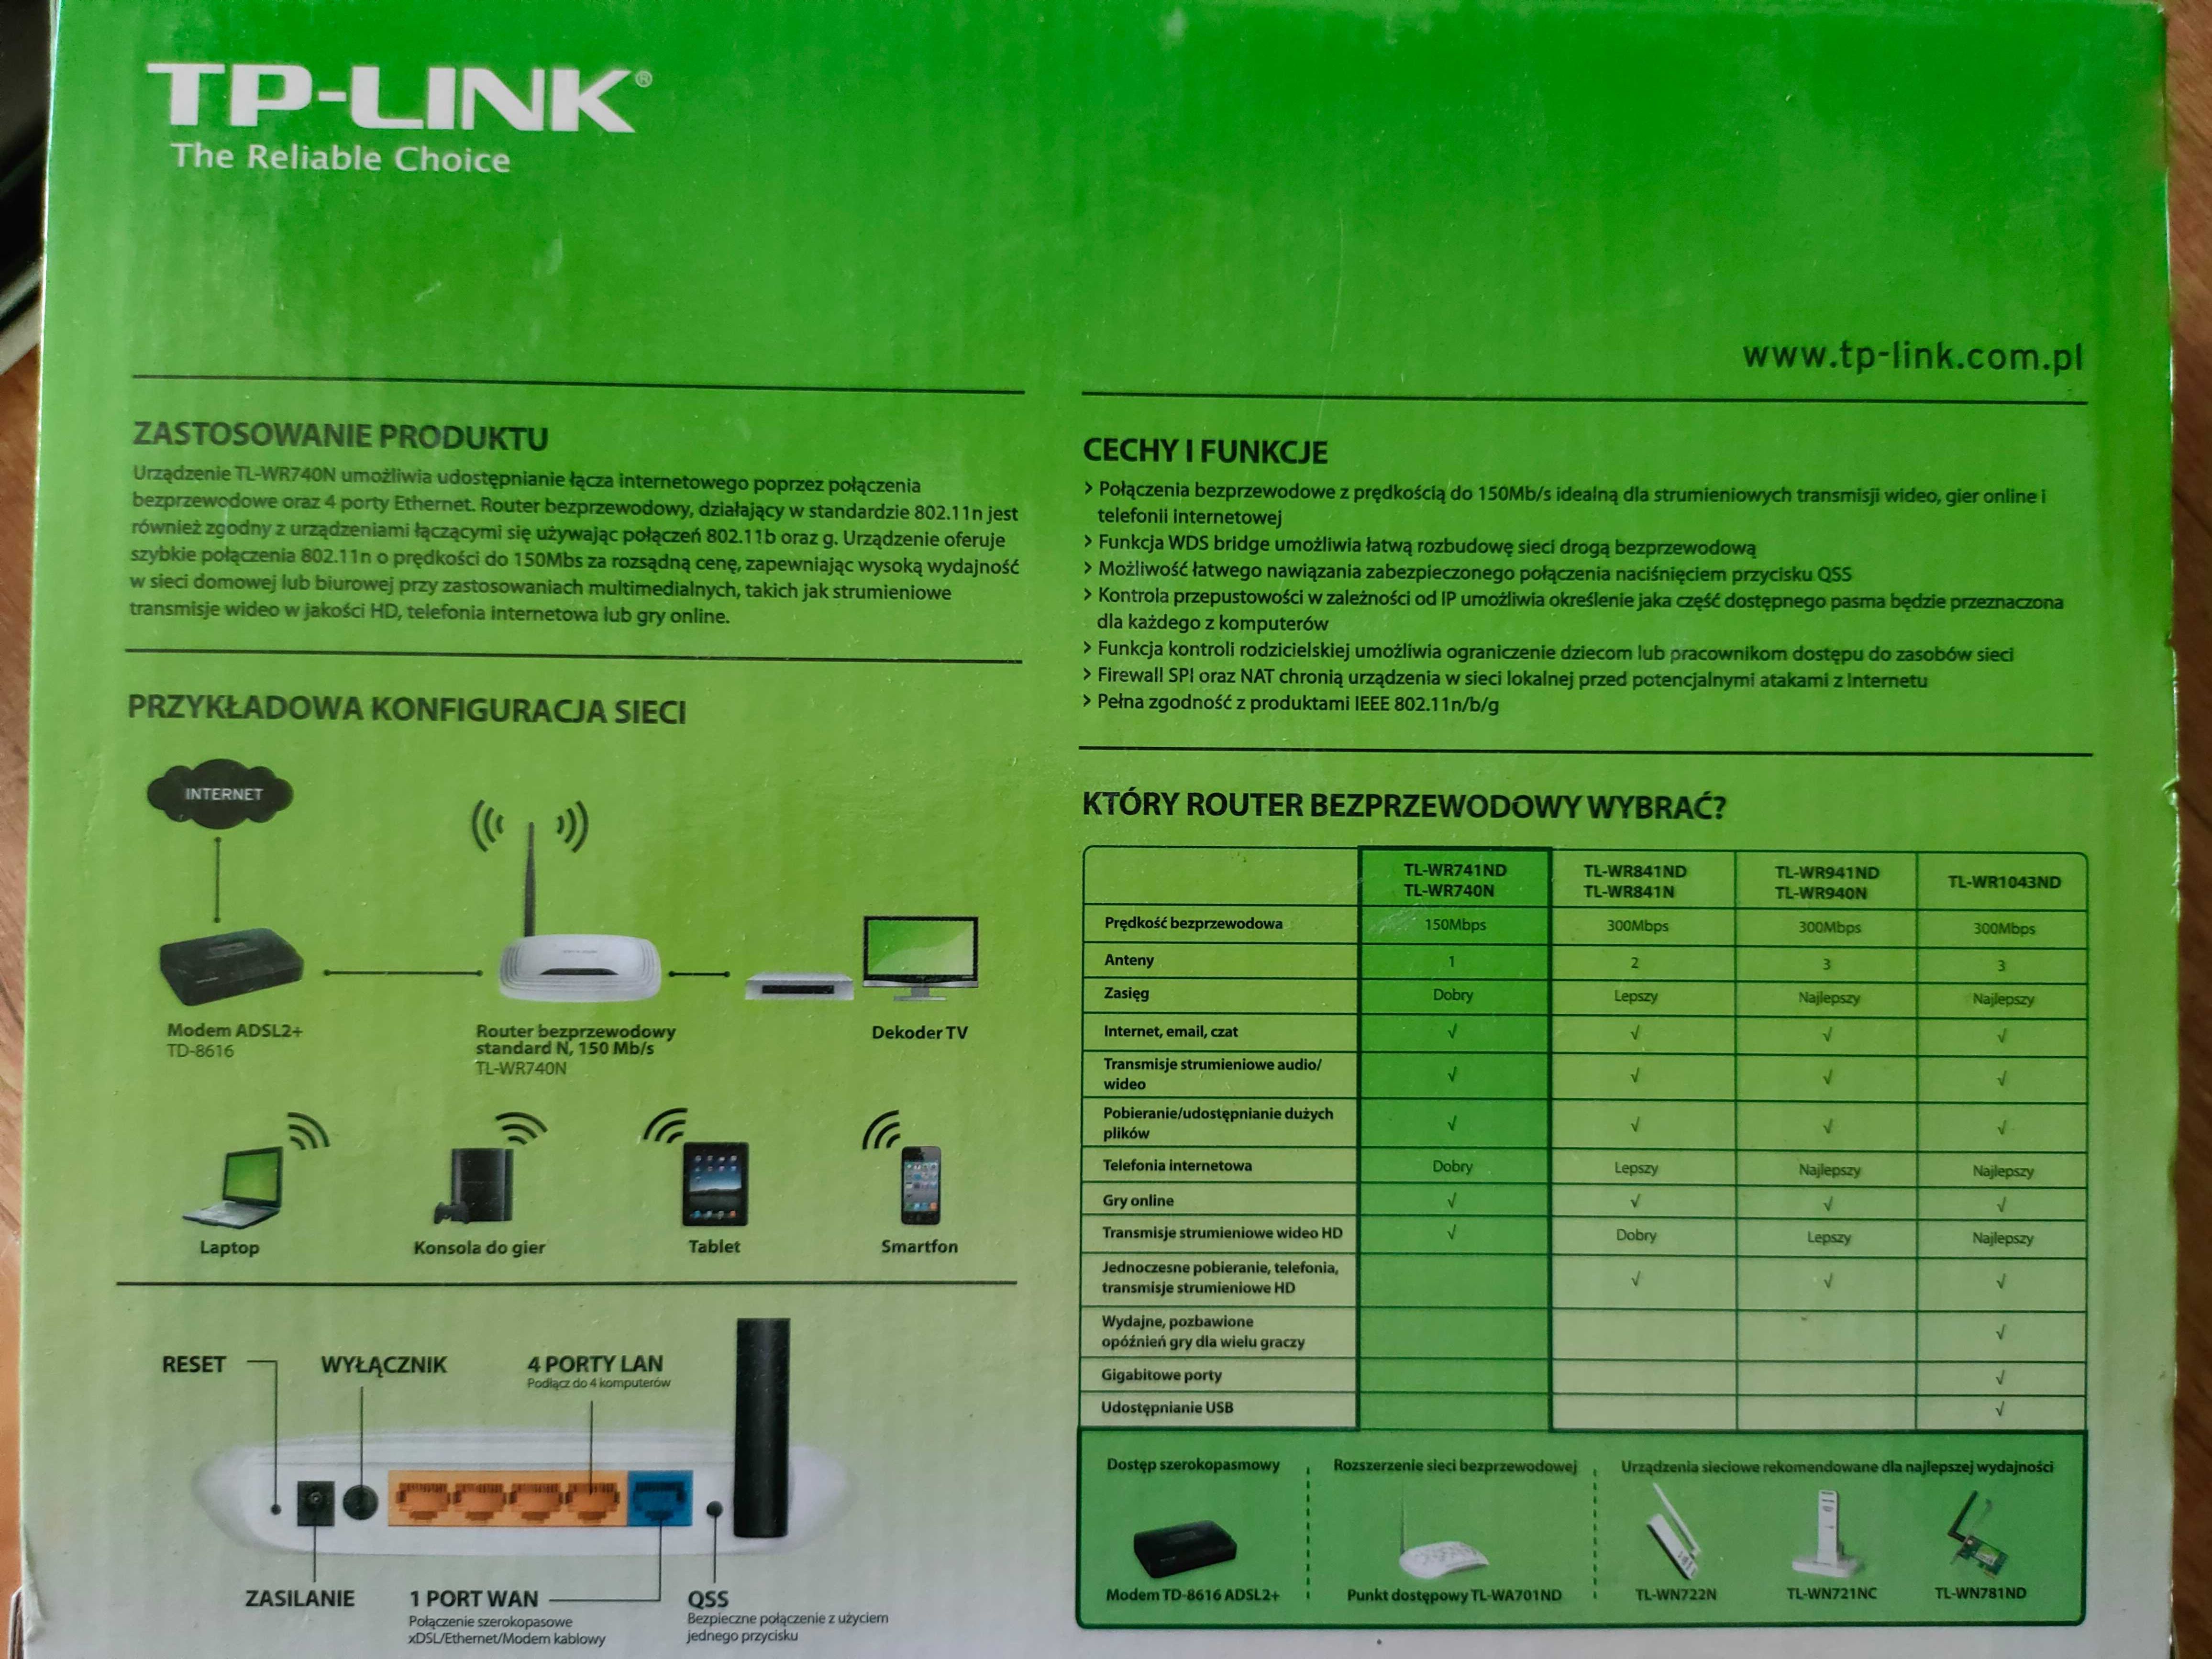 TP-LINK router bezprzewodowy wi-fi